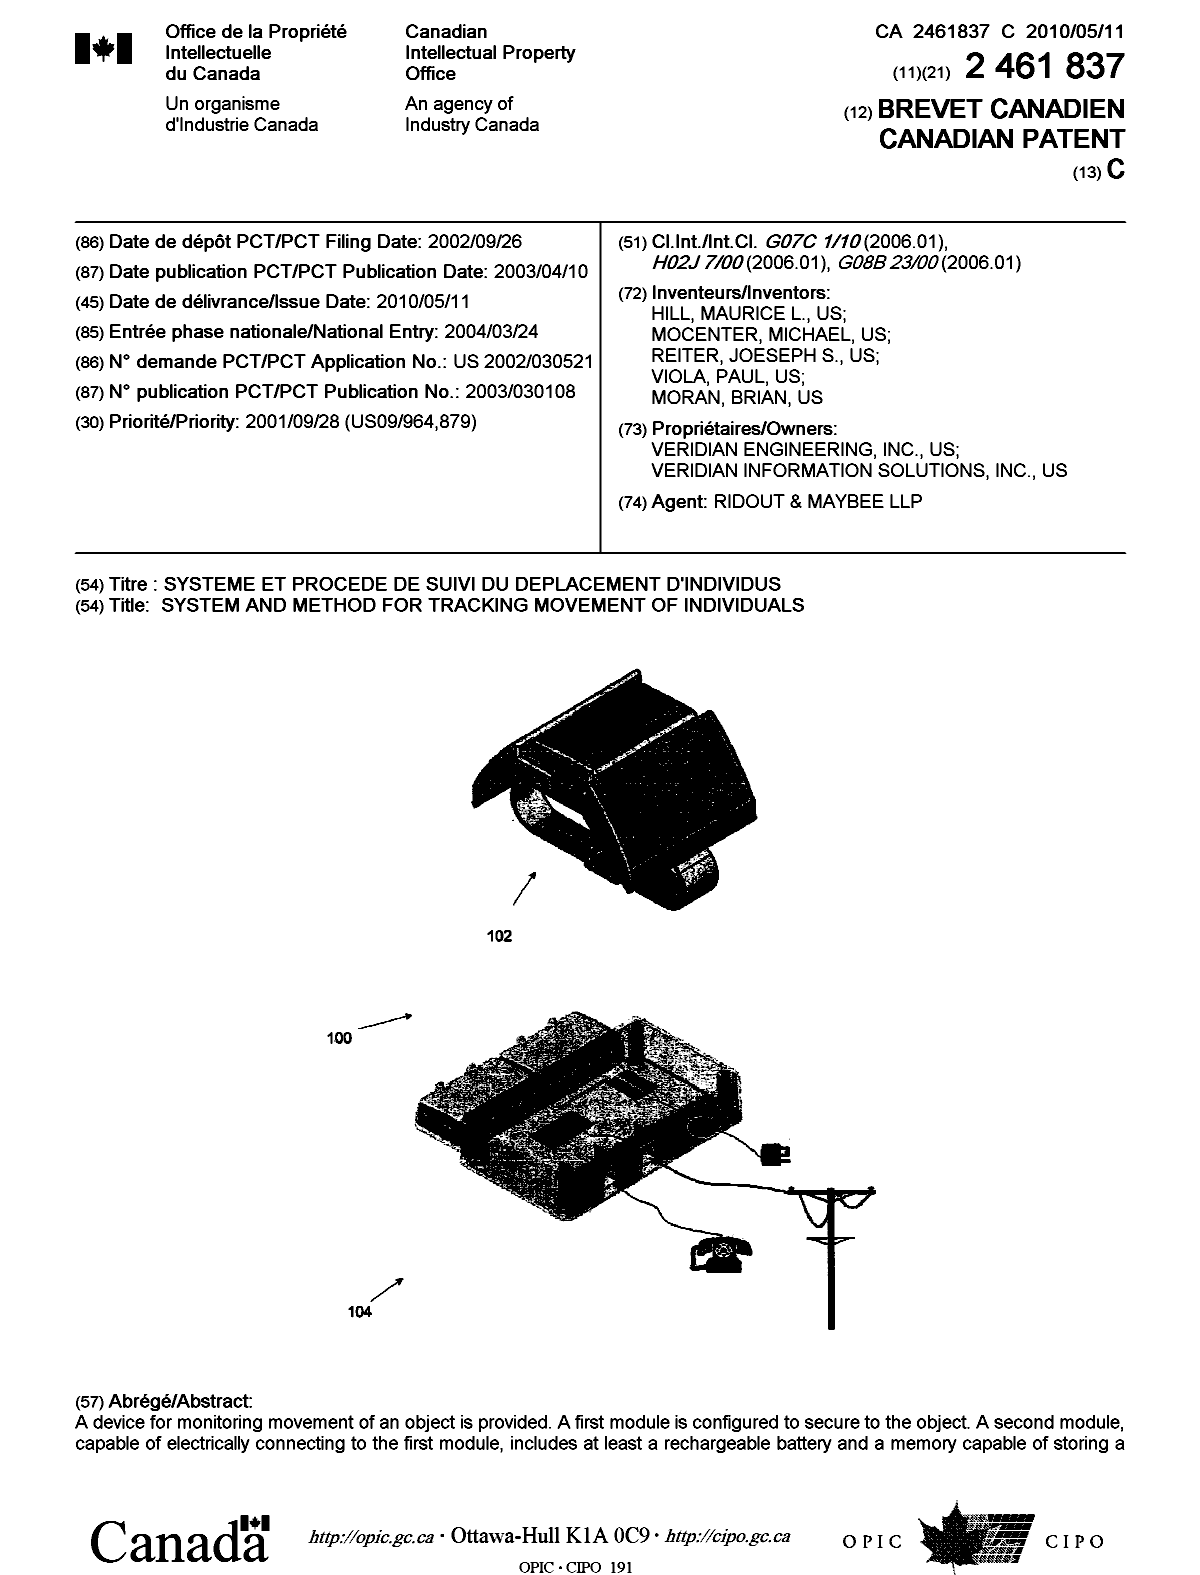 Document de brevet canadien 2461837. Page couverture 20100416. Image 1 de 2